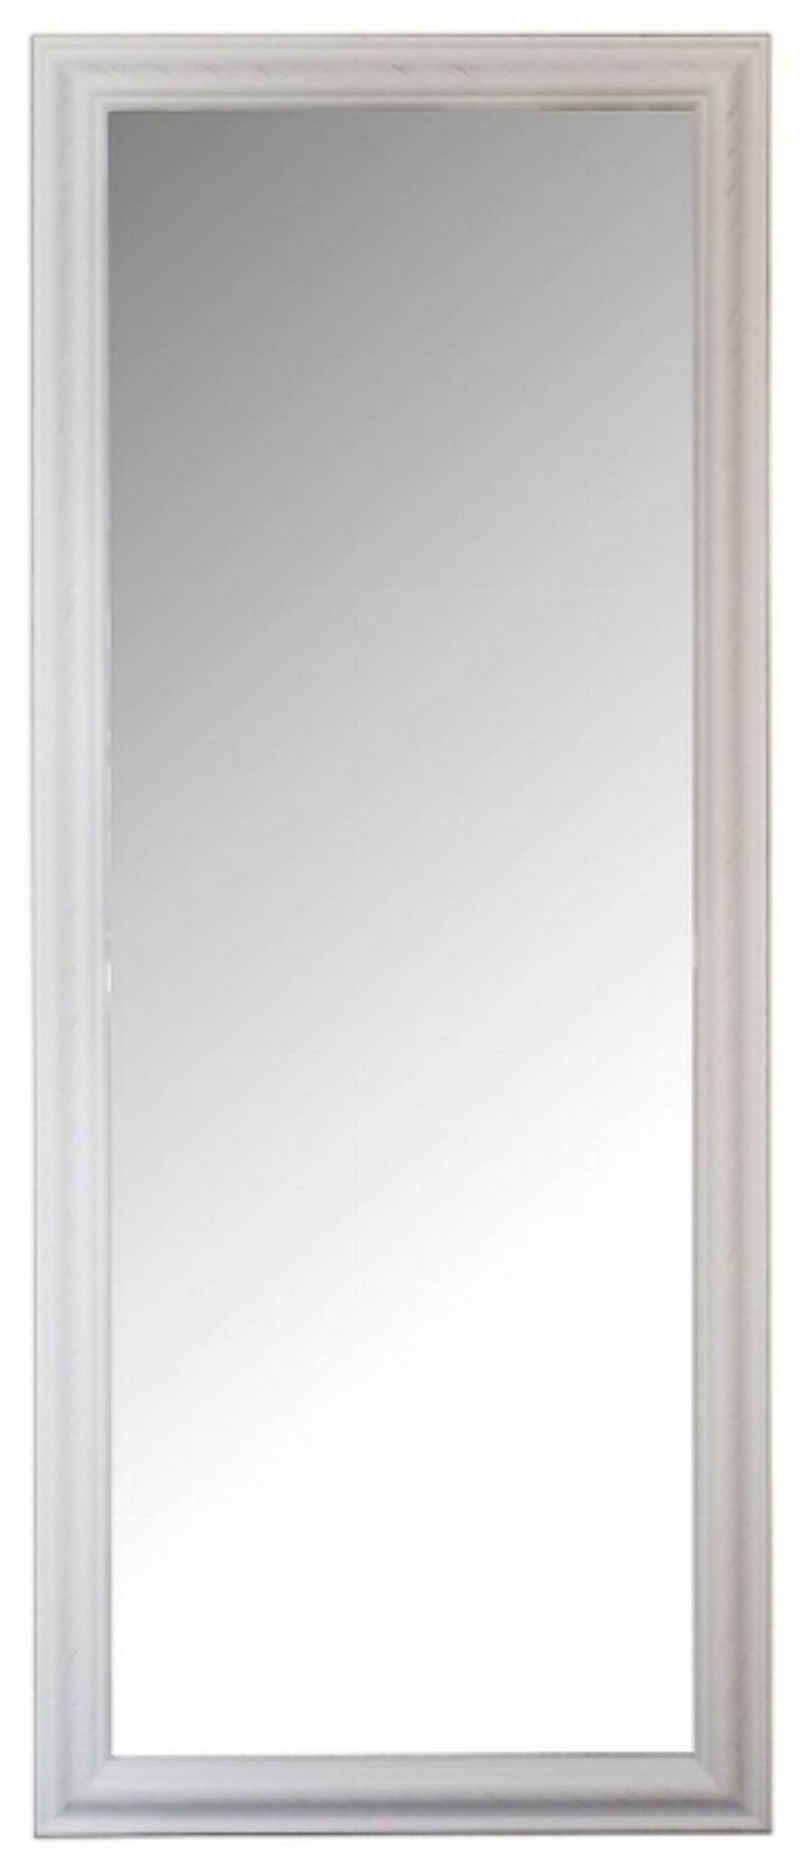 elbmöbel Wandspiegel Spiegel weiß schlicht 150cm, Wandspiegel 50 x 60cm groß in weiß mit schlichtem Rahmen Standspiegel